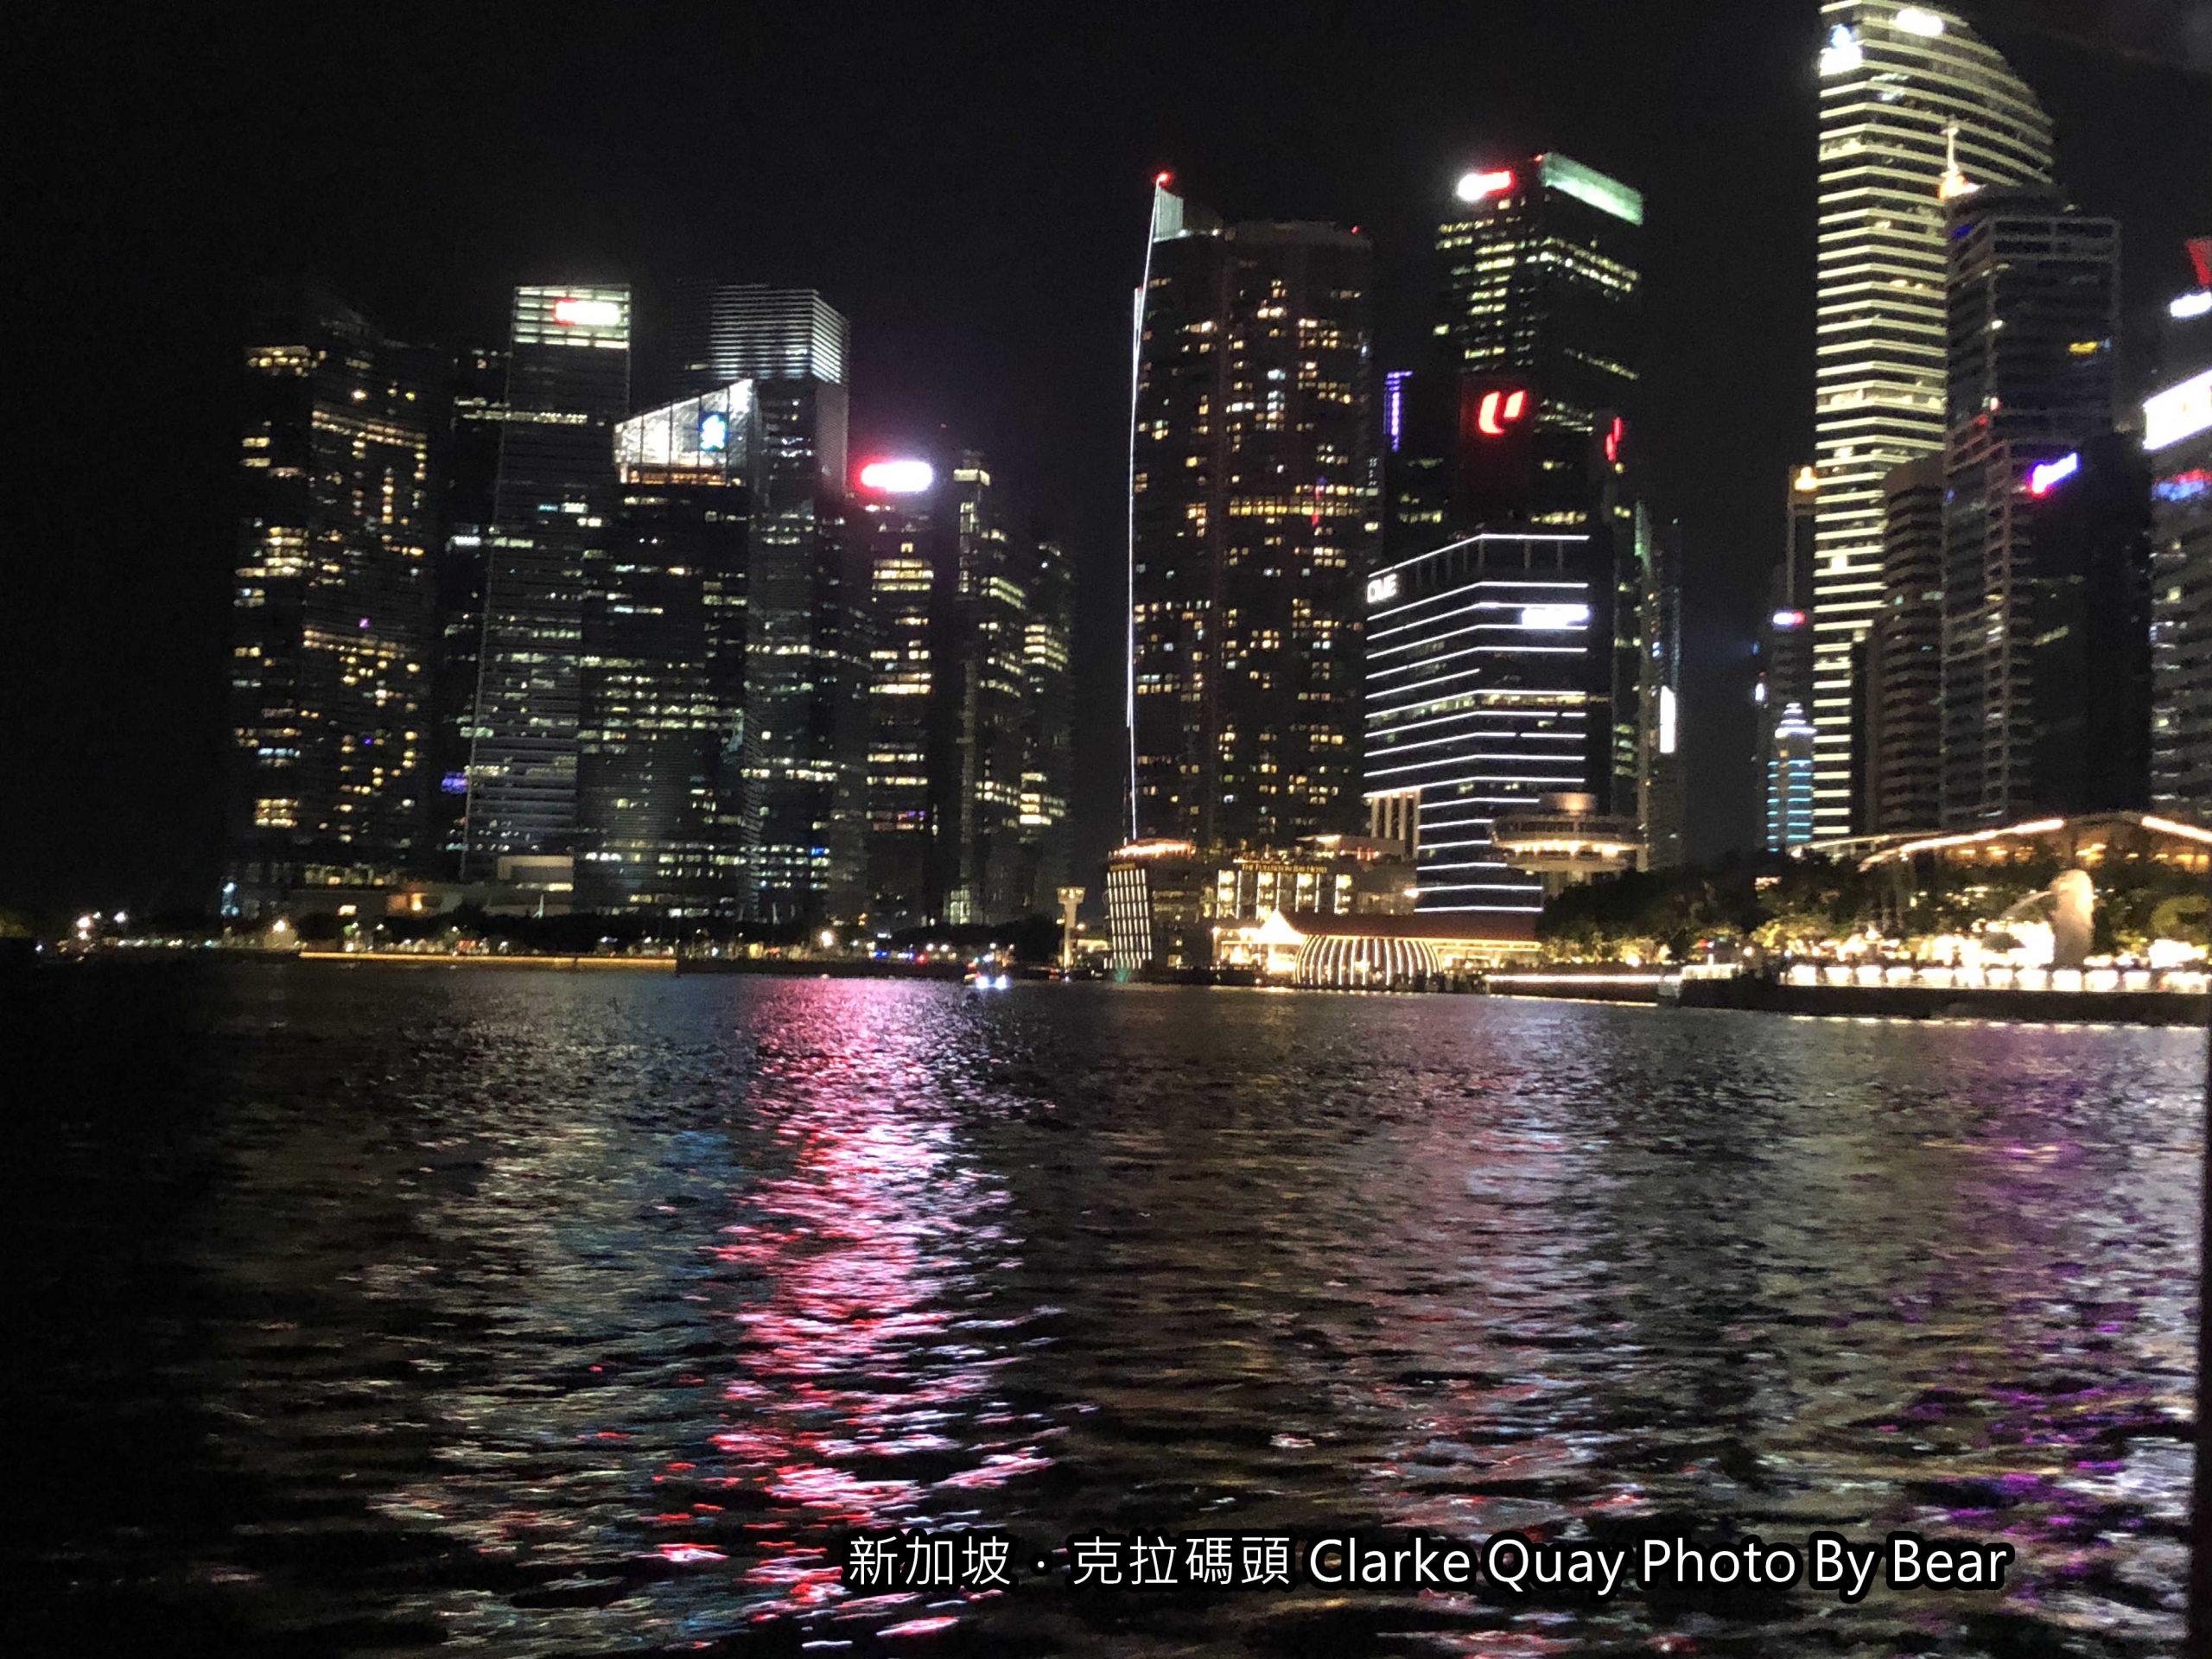 【2019新加坡自由行】「克拉碼頭Clarke Quay遊船賞夜景&色彩繽紛的歷史建築-舊禧街警察局散策」